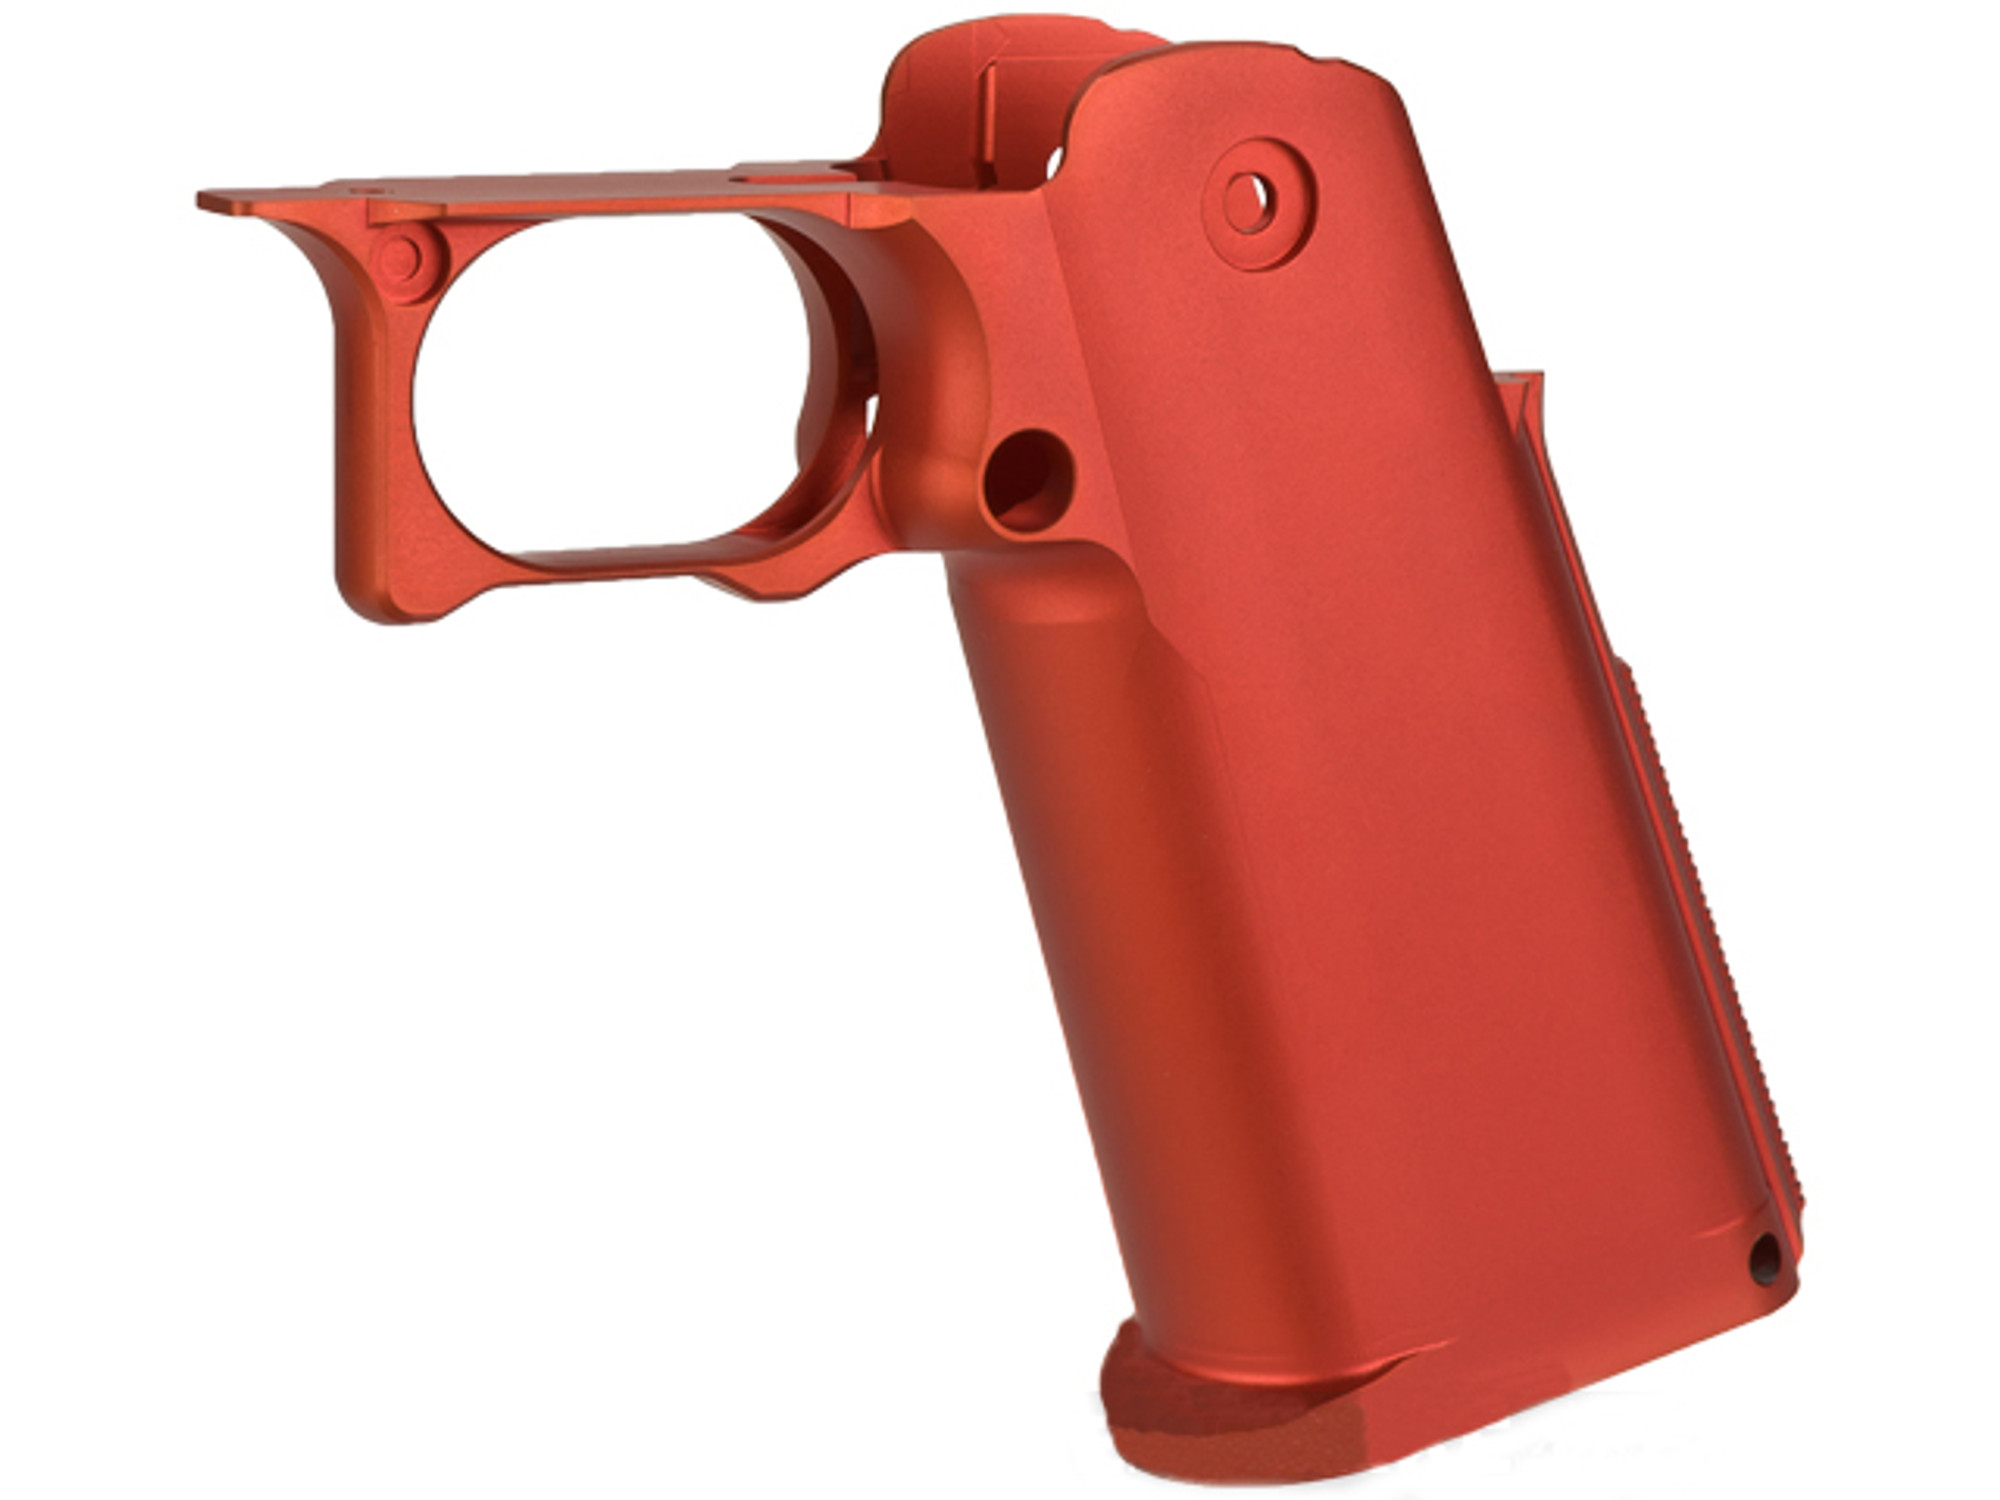 UAC CNC Aluminum Blaster Grip for TM Hi-CAPA 5.1 Series Airsoft GBB Pistols - Red